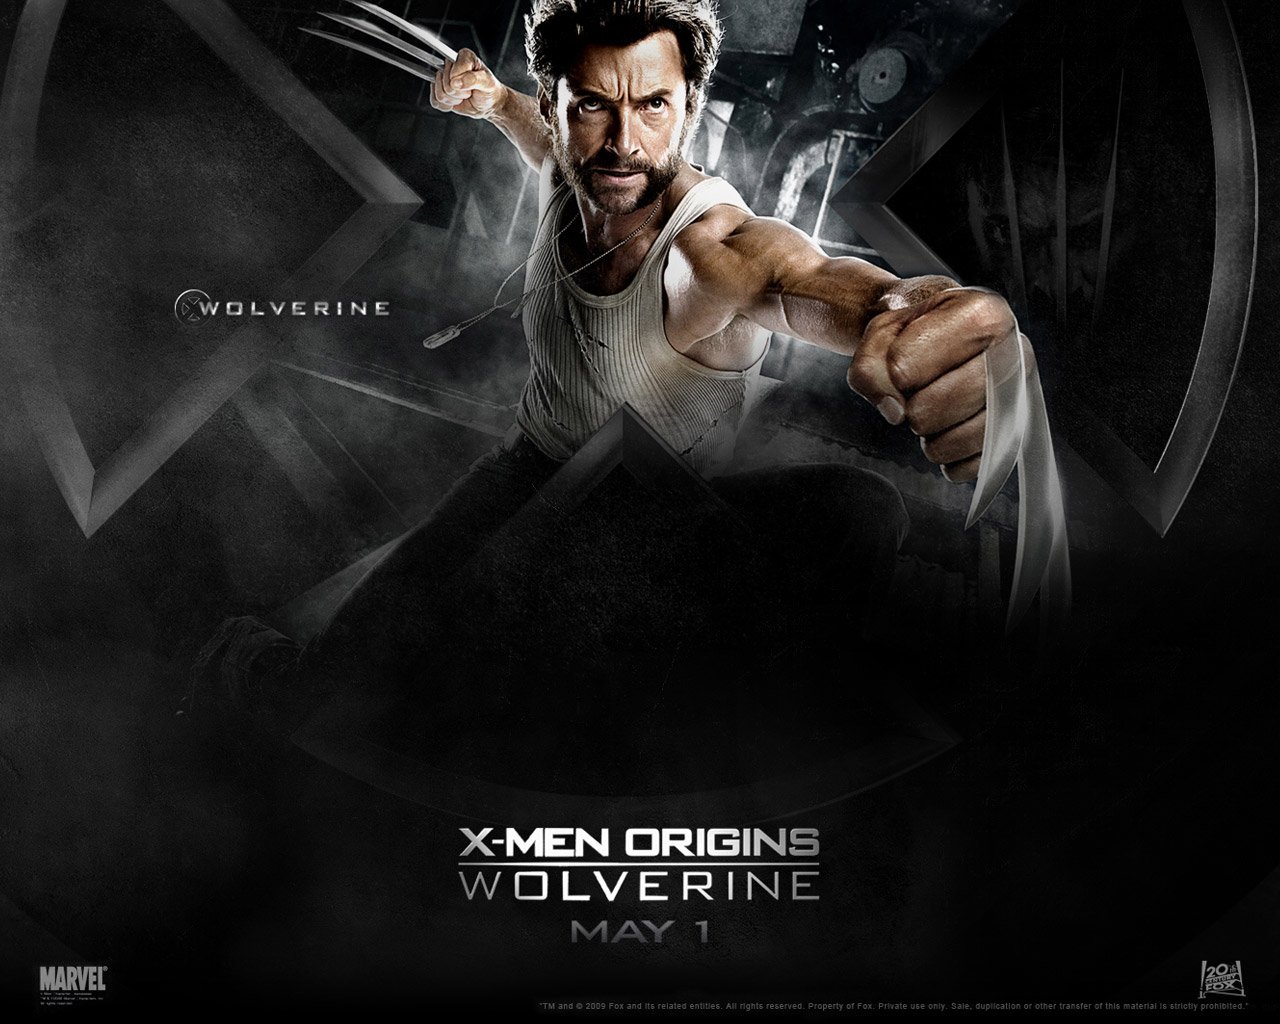 X-Men Origins: Wolverine Wallpaper - Wolverine. View Full Size